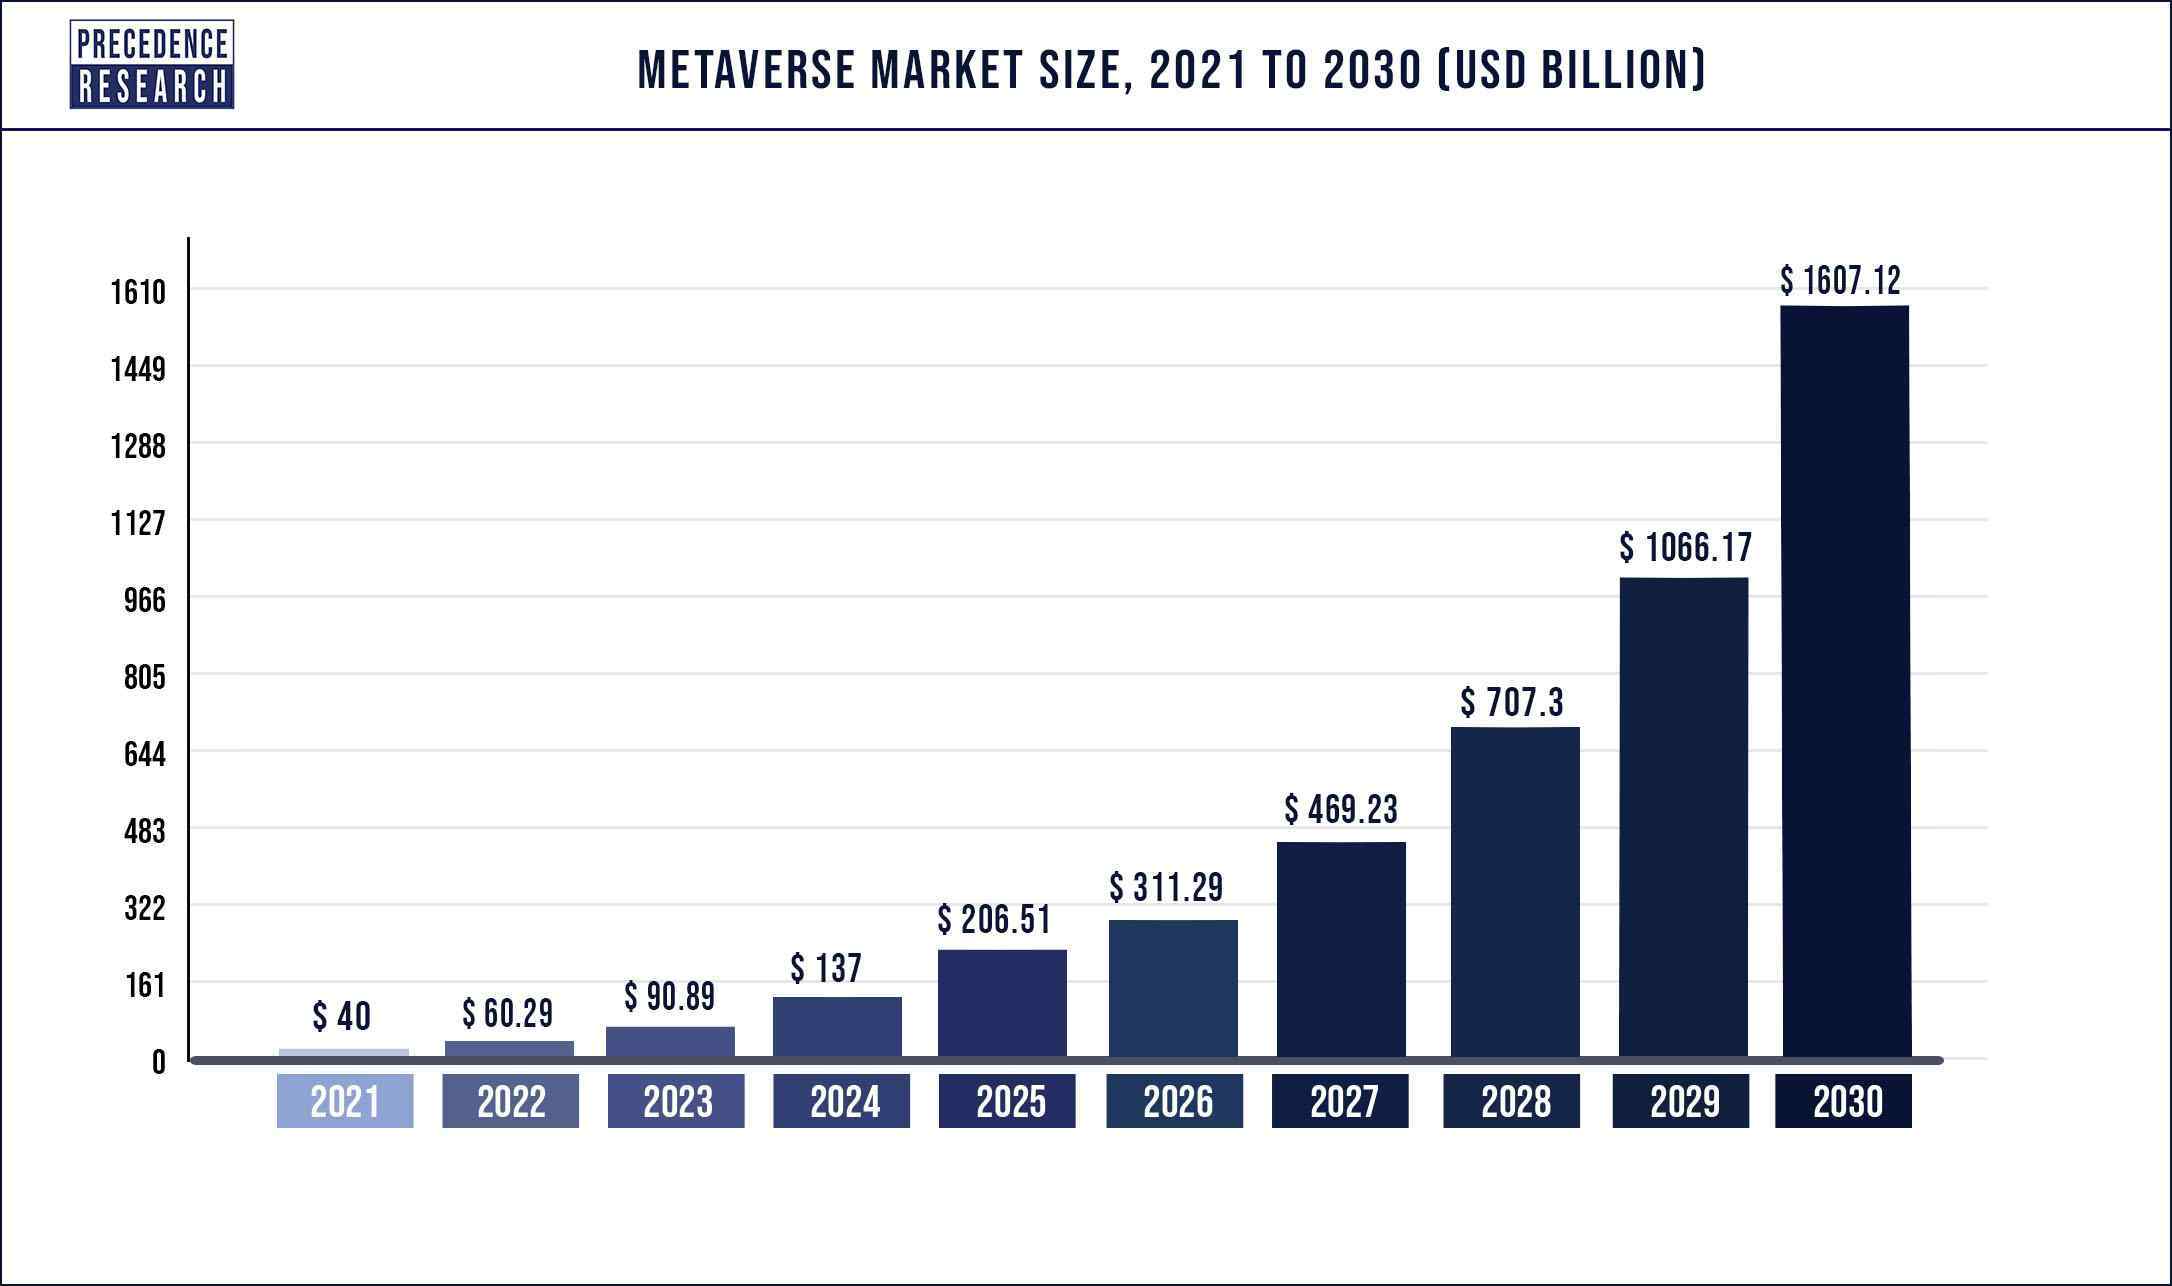 Metaverse Market Size 2022 to 2030